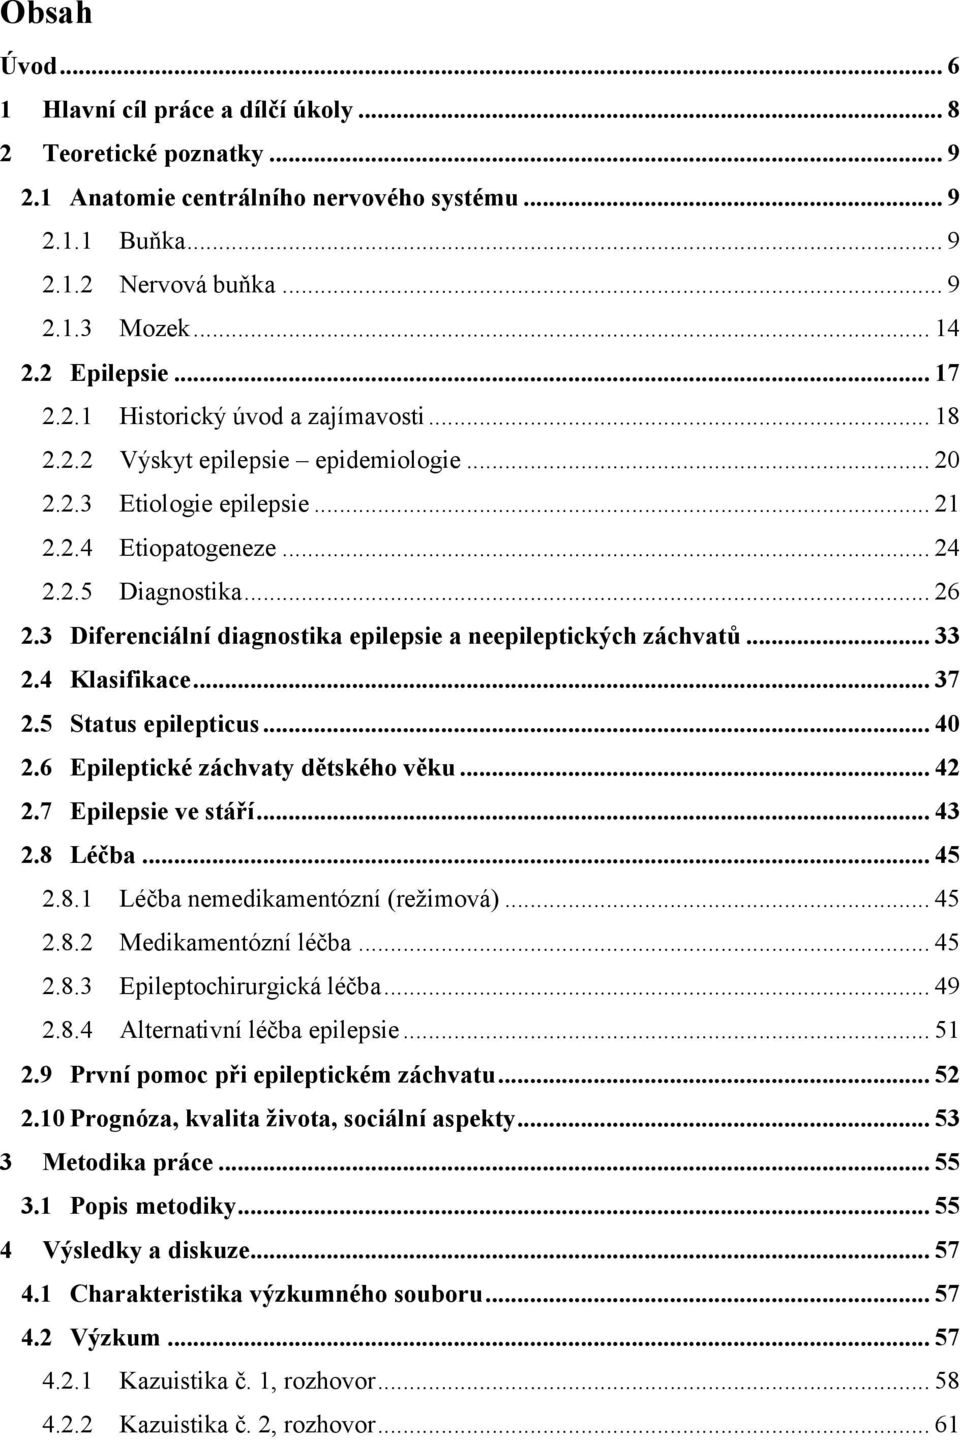 3 Diferenciální diagnostika epilepsie a neepileptických záchvatů... 33 2.4 Klasifikace... 37 2.5 Status epilepticus... 40 2.6 Epileptické záchvaty dětského věku... 42 2.7 Epilepsie ve stáří... 43 2.